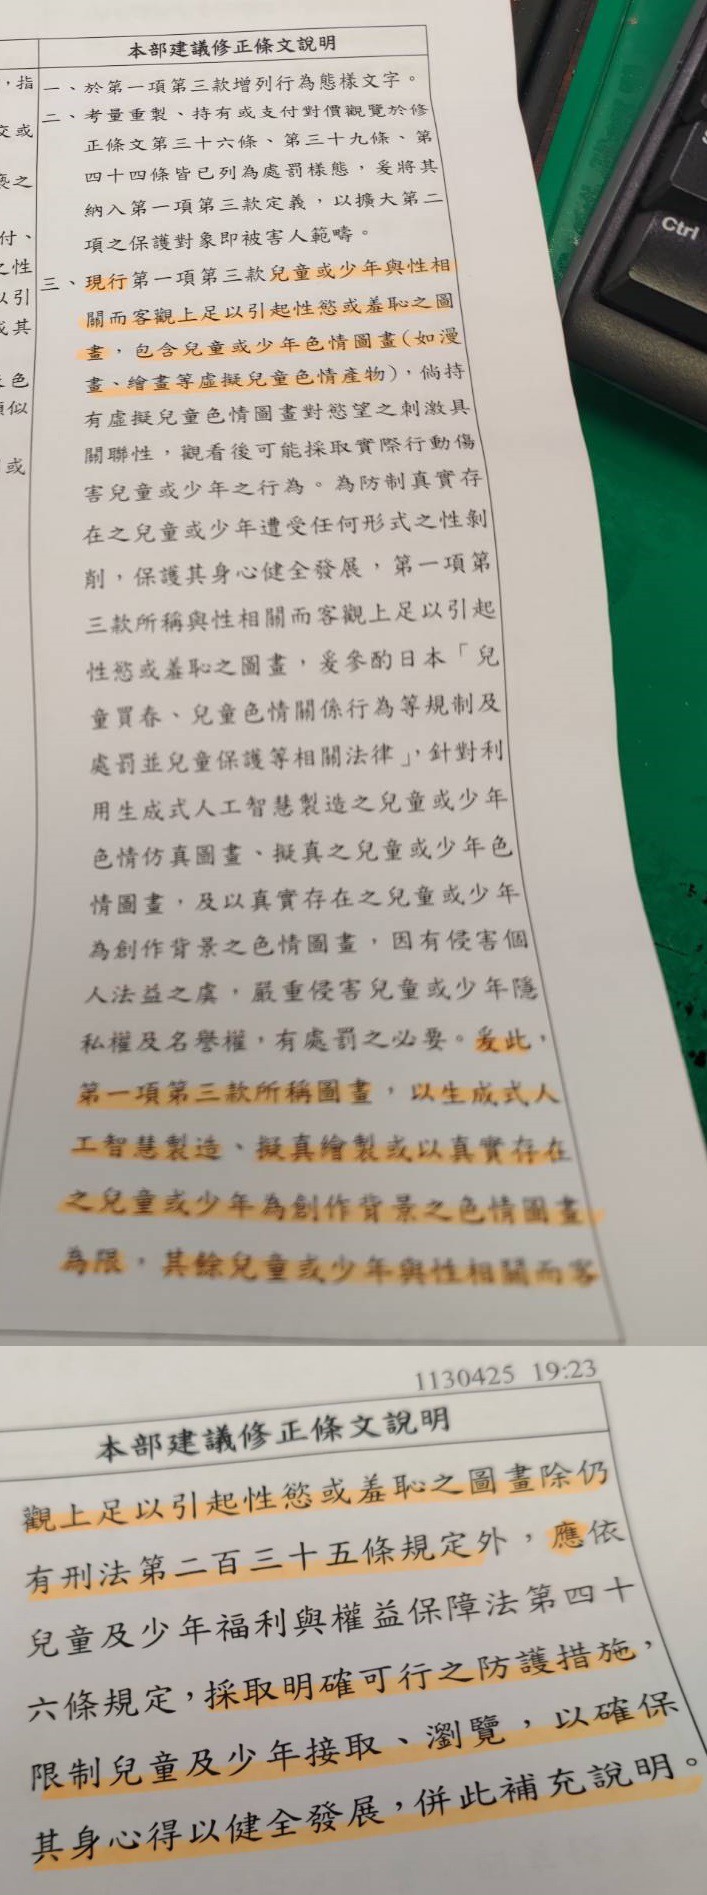 圖 (iwin)衛福部寫出前後矛盾的立法理由